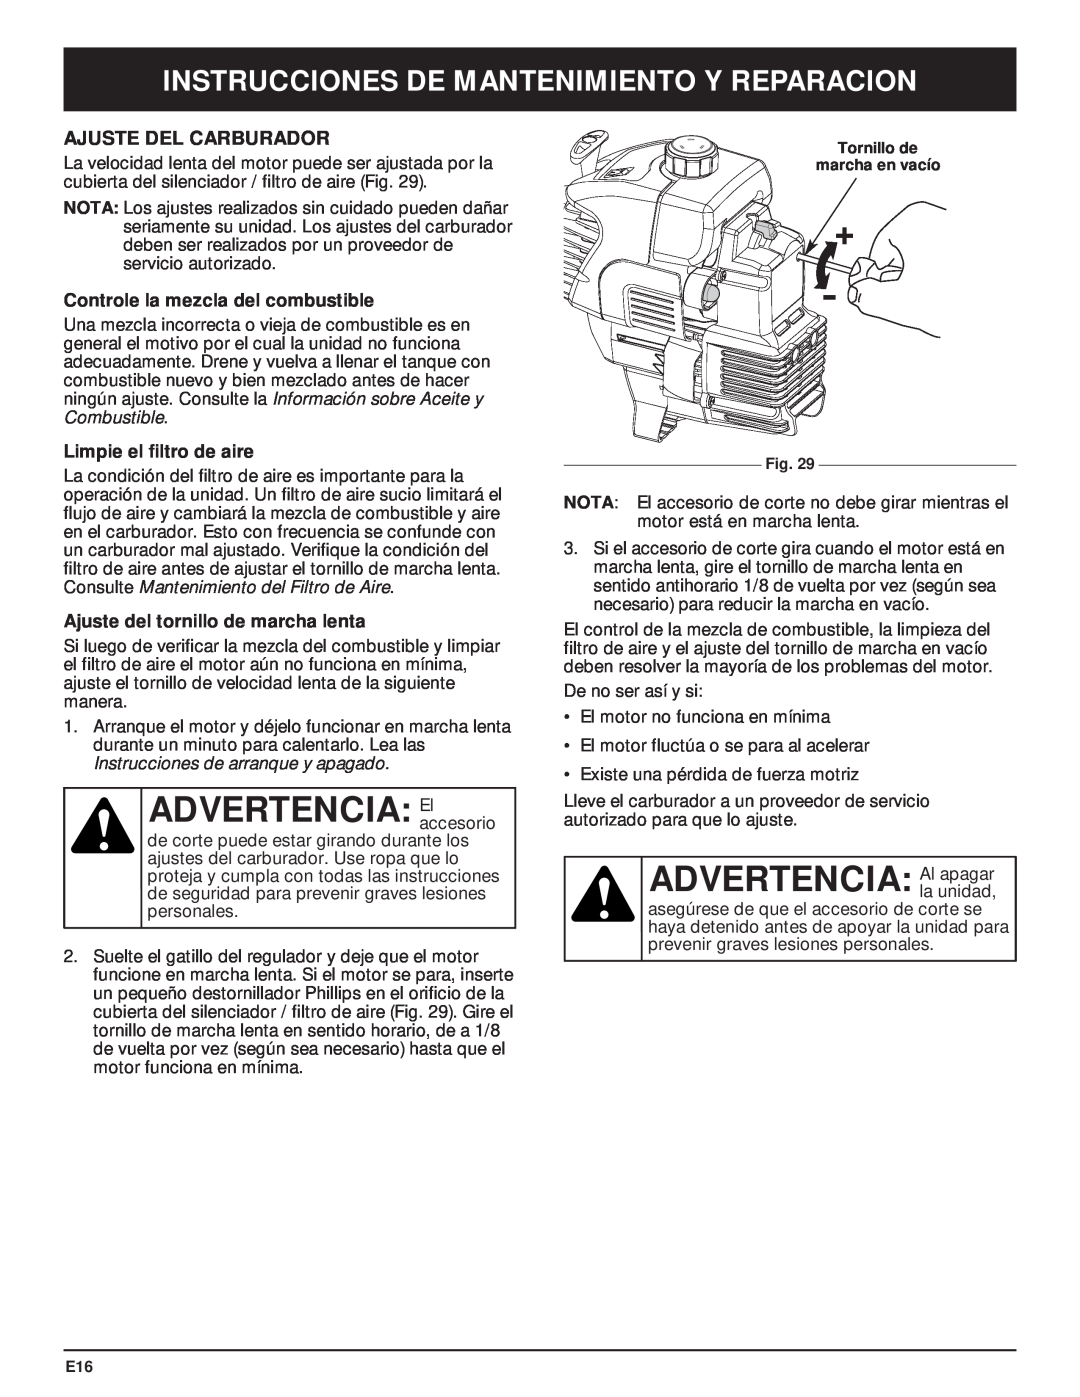 McCulloch MT705 manual ADVERTENCIA Elaccesorio, Ajuste Del Carburador, Controle la mezcla del combustible 